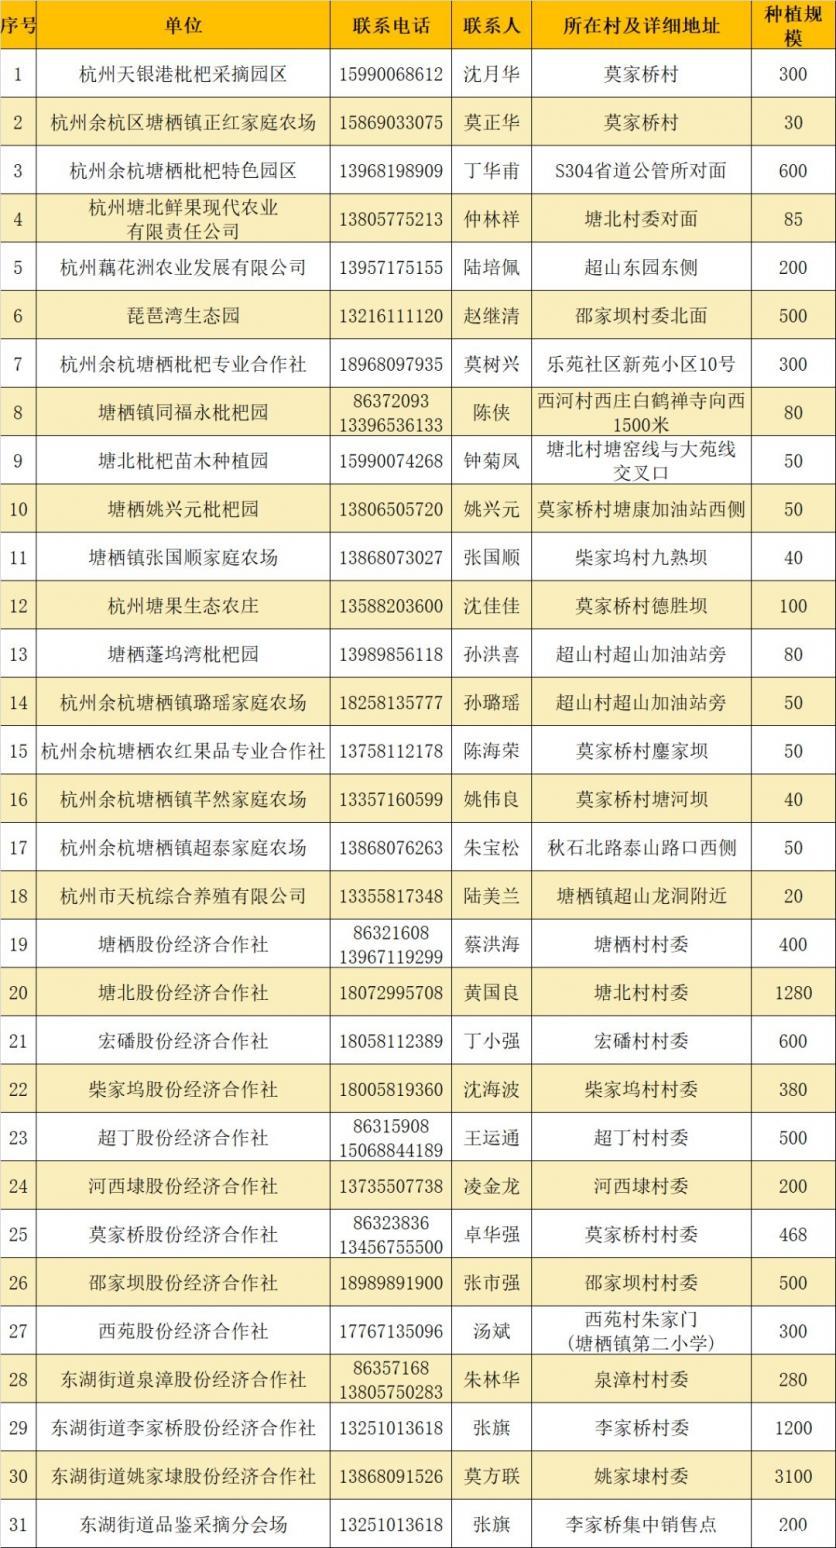 杭州塘栖枇杷园采摘基地 地址-联系方式